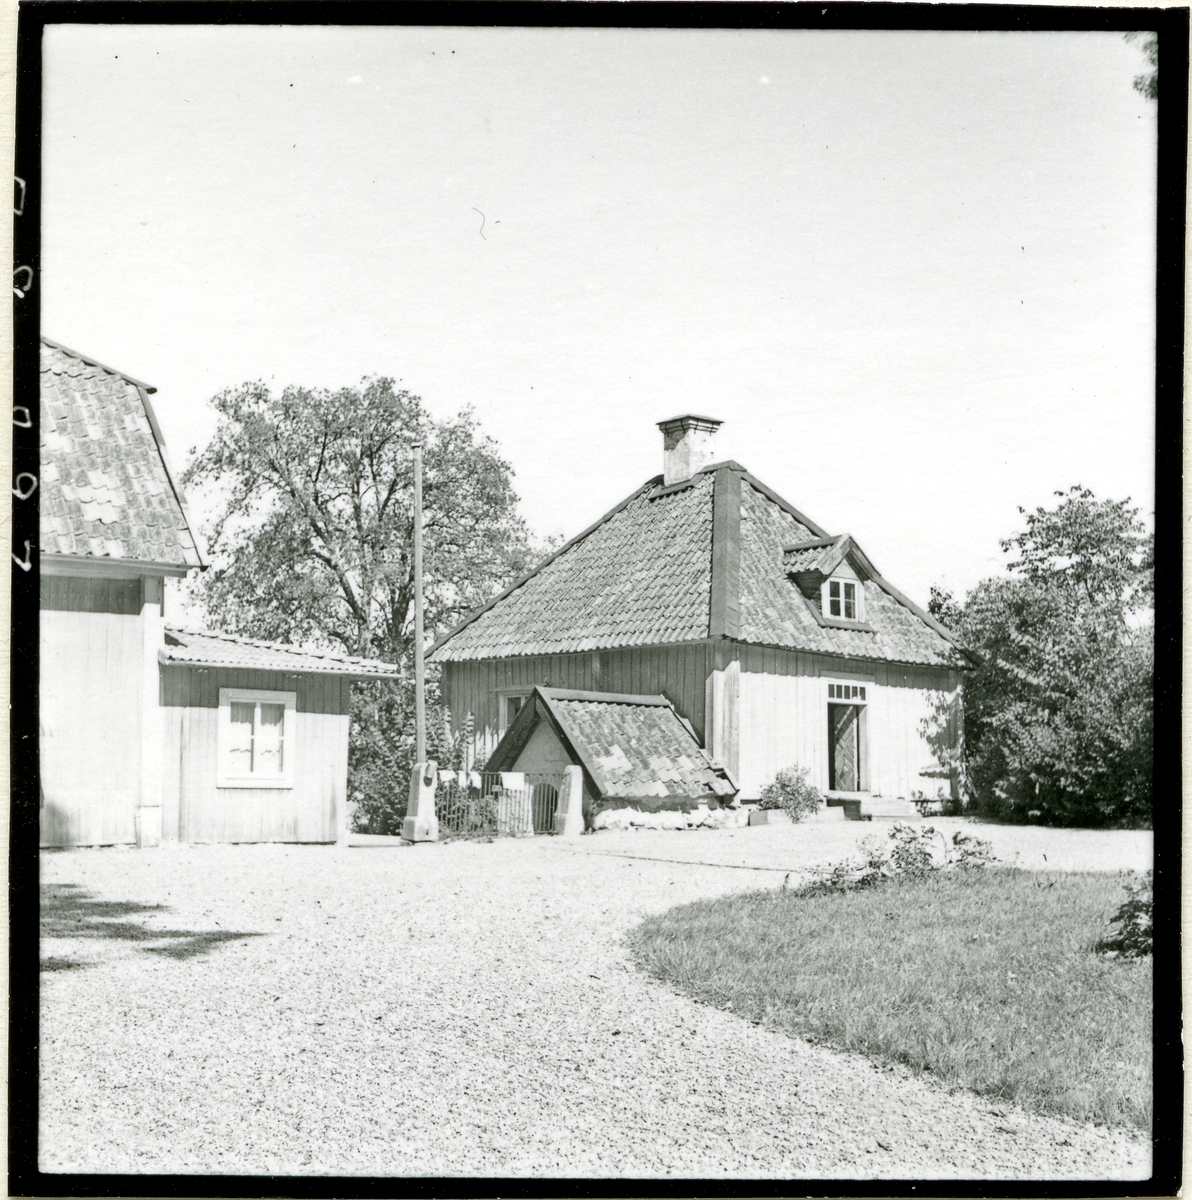 Kung Karl sn, Kungsör.
Reutersbergs gård, 1947.